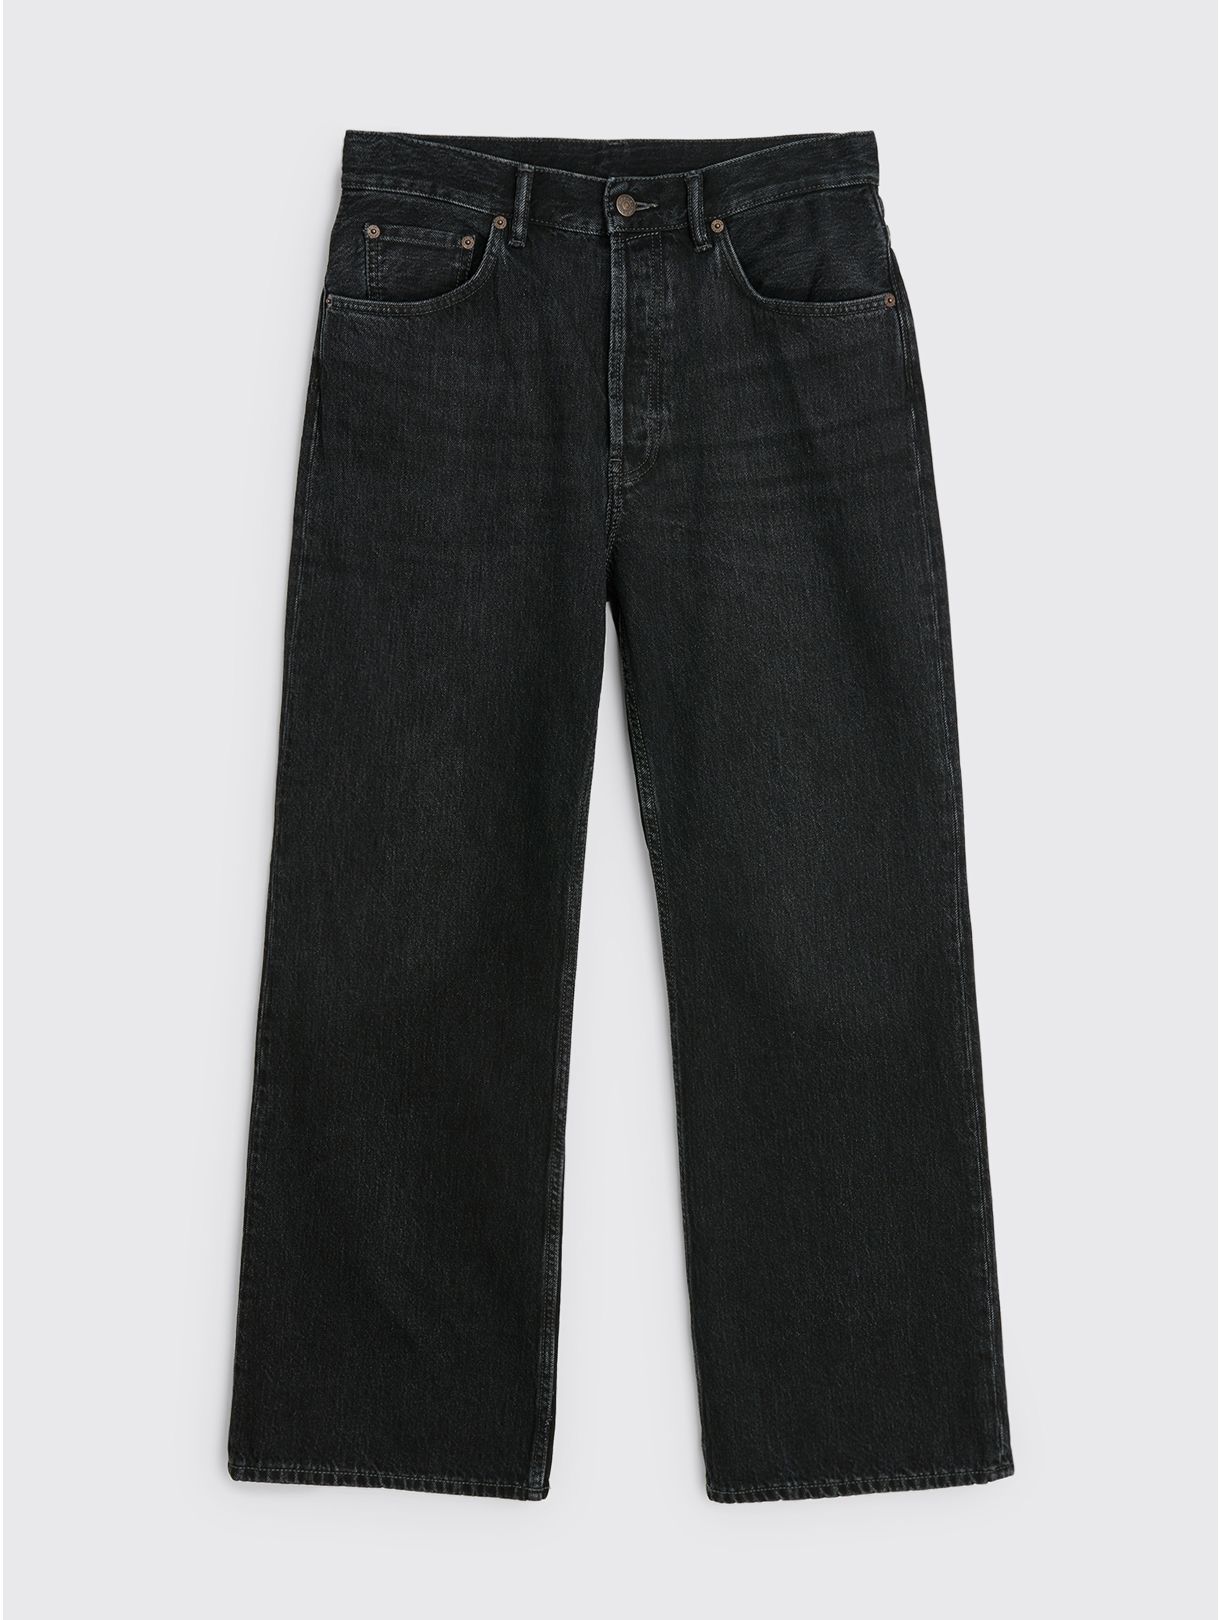 Très Bien - Acne Studios 2021M Jeans Vintage Black